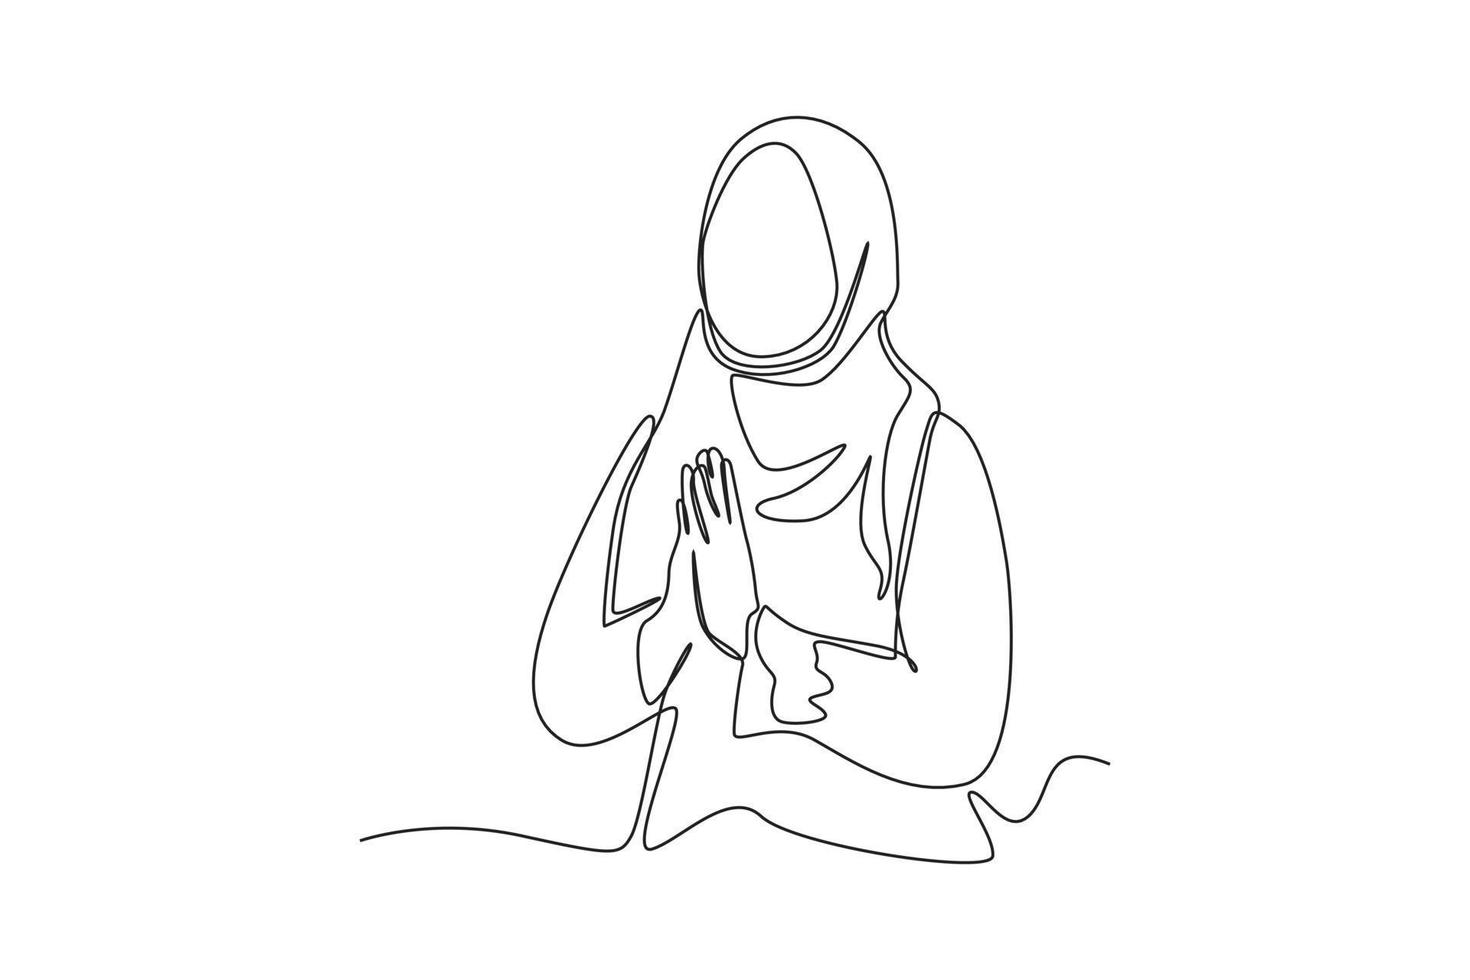 dibujo continuo de una línea mujer musulmana celebra el evento islámico con poses de gestos para dar la bienvenida al ramadán. concepto de ramadán. ilustración gráfica vectorial de diseño de dibujo de una sola línea. vector